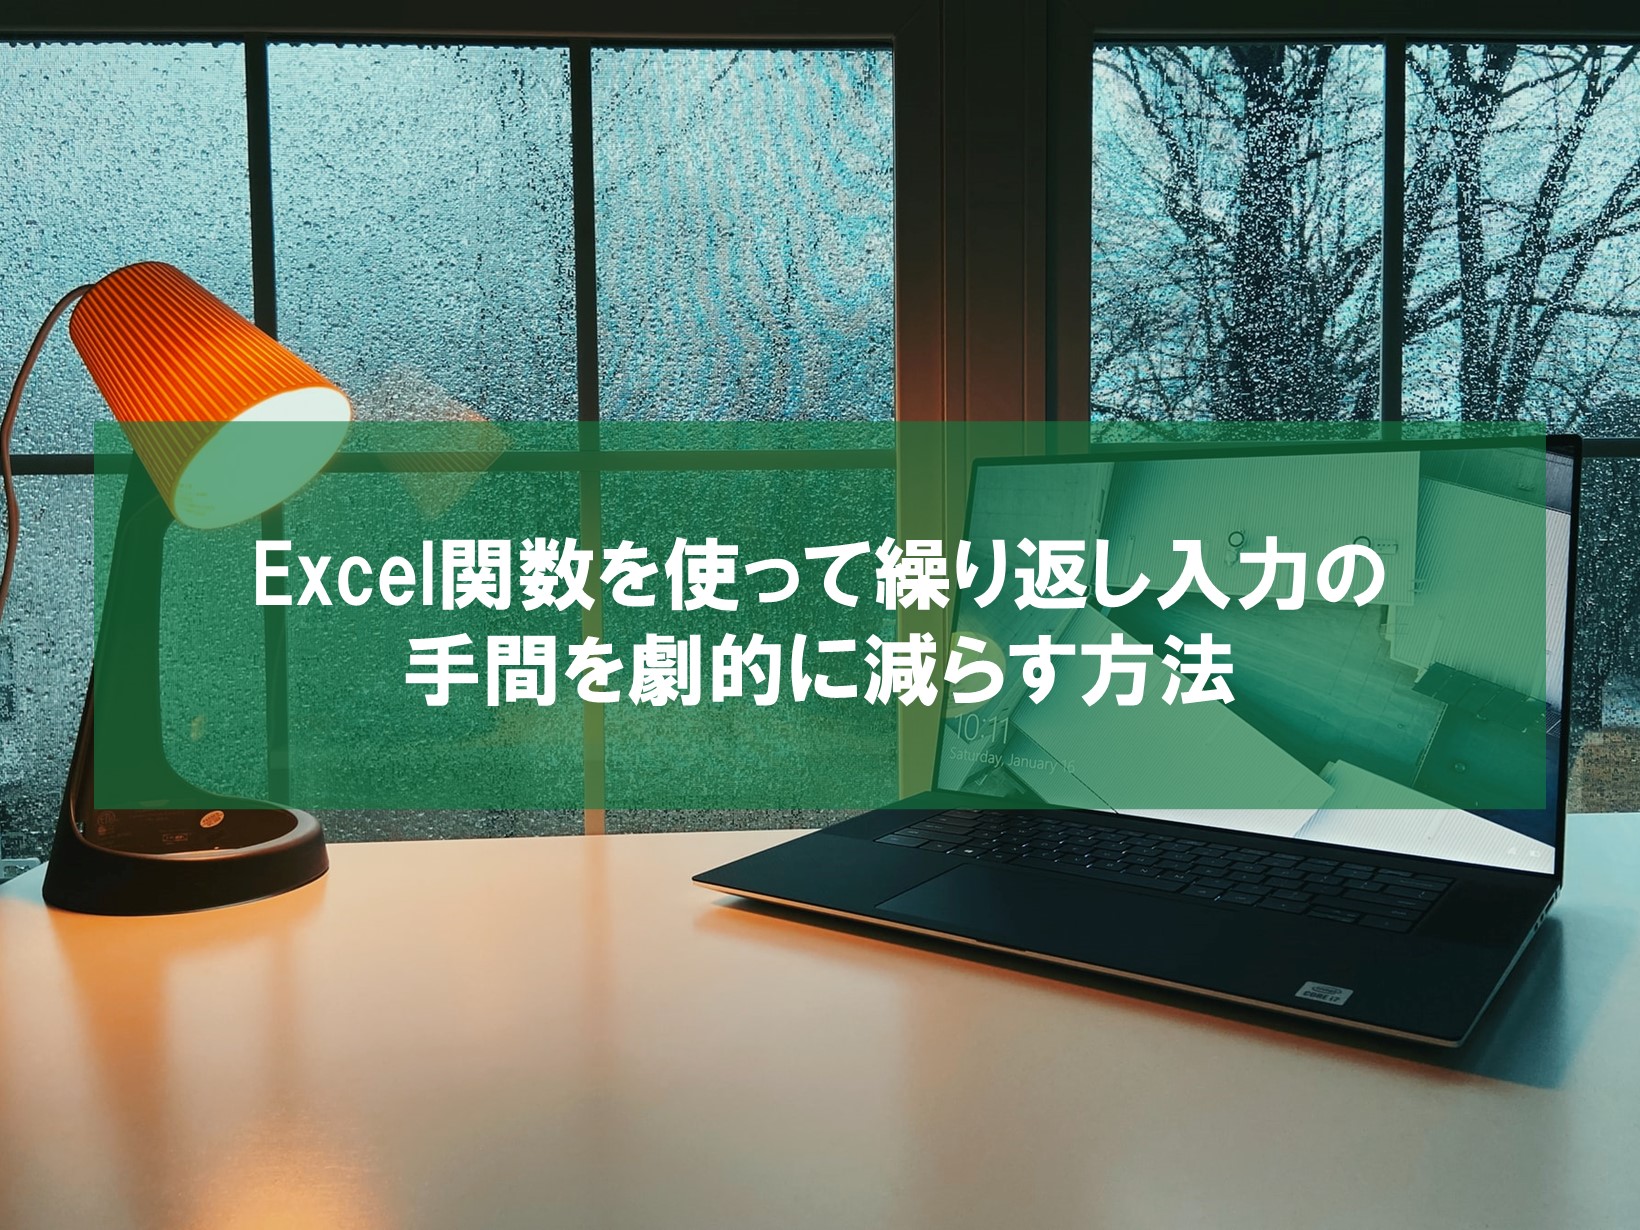 Excel関数を使って繰り返し入力の手間を劇的に減らす方法